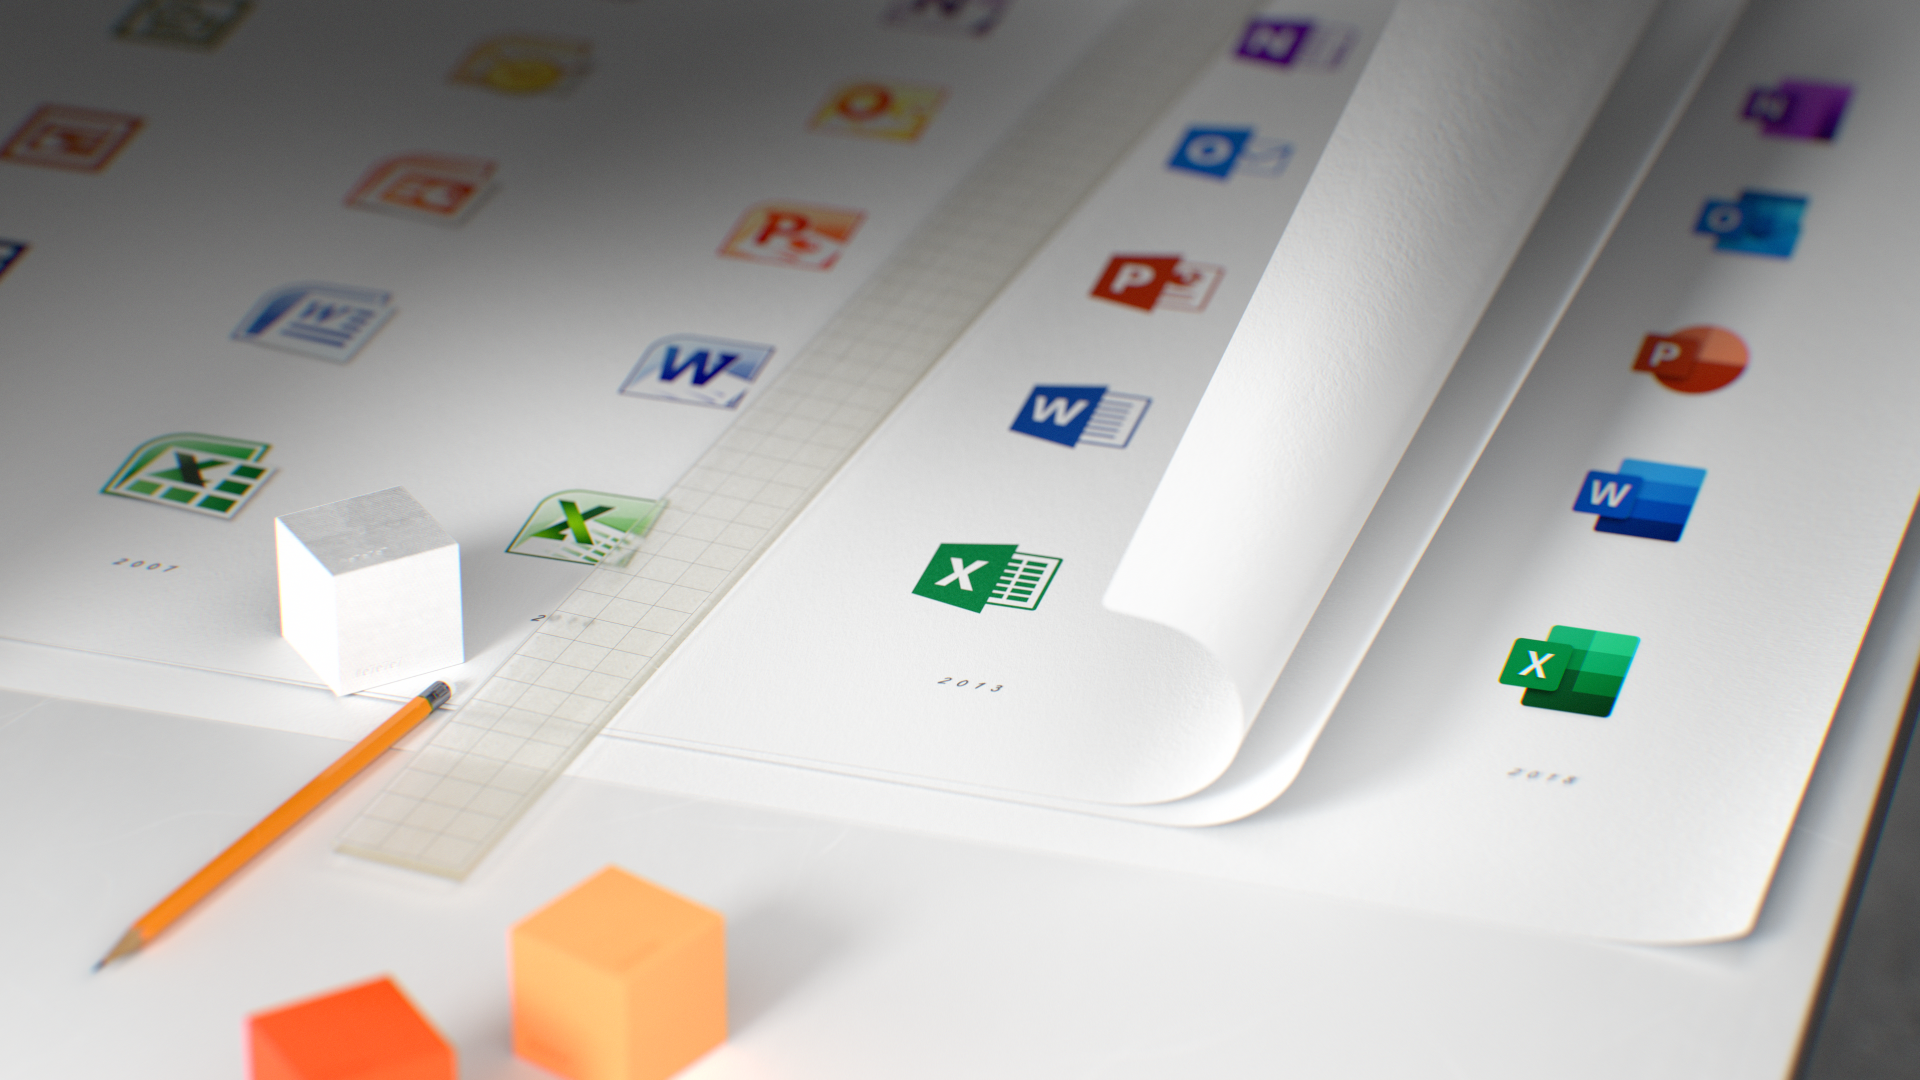 Link tải Microsoft Office 2019 cho Mac OS v16.24 Full - Với icon mới cực đẹp